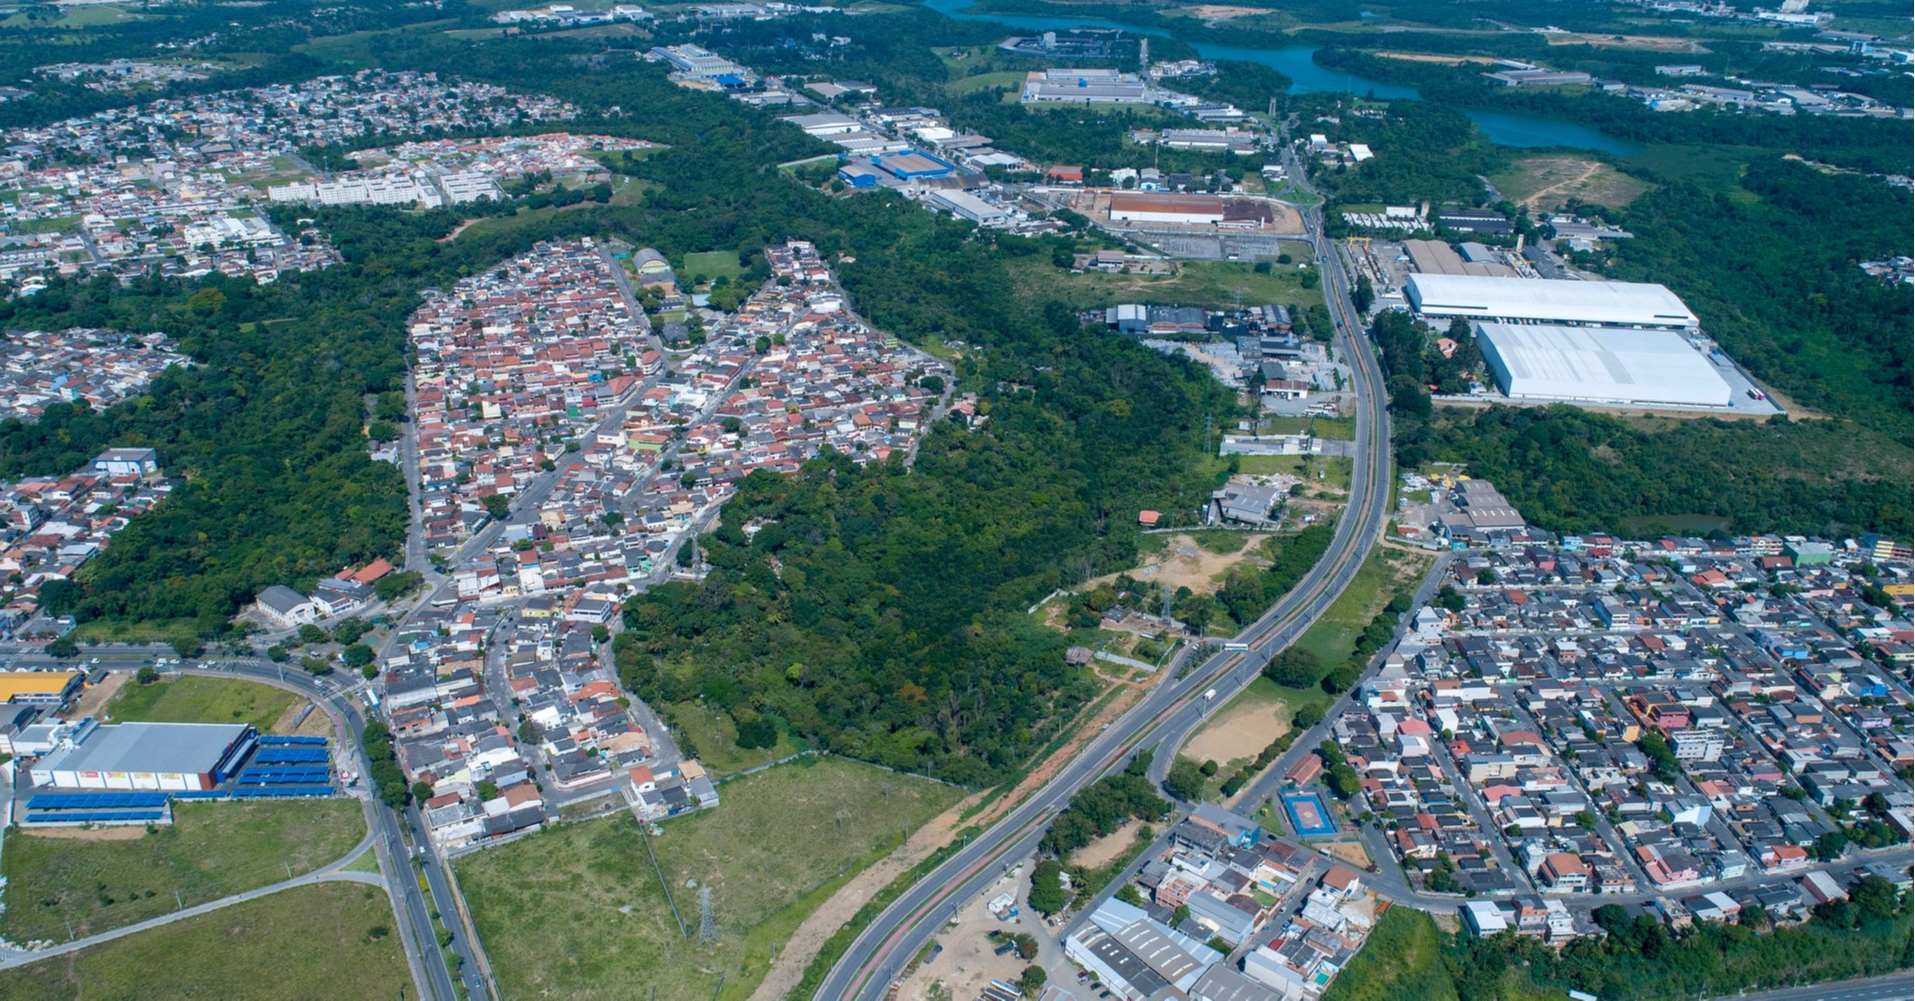 Vista do Civit: Serra abriga
12 polos empresariais integrados
à infraestrutura local e ao sistema
logístico, viabilizando as mais
diversas atividades econômicas